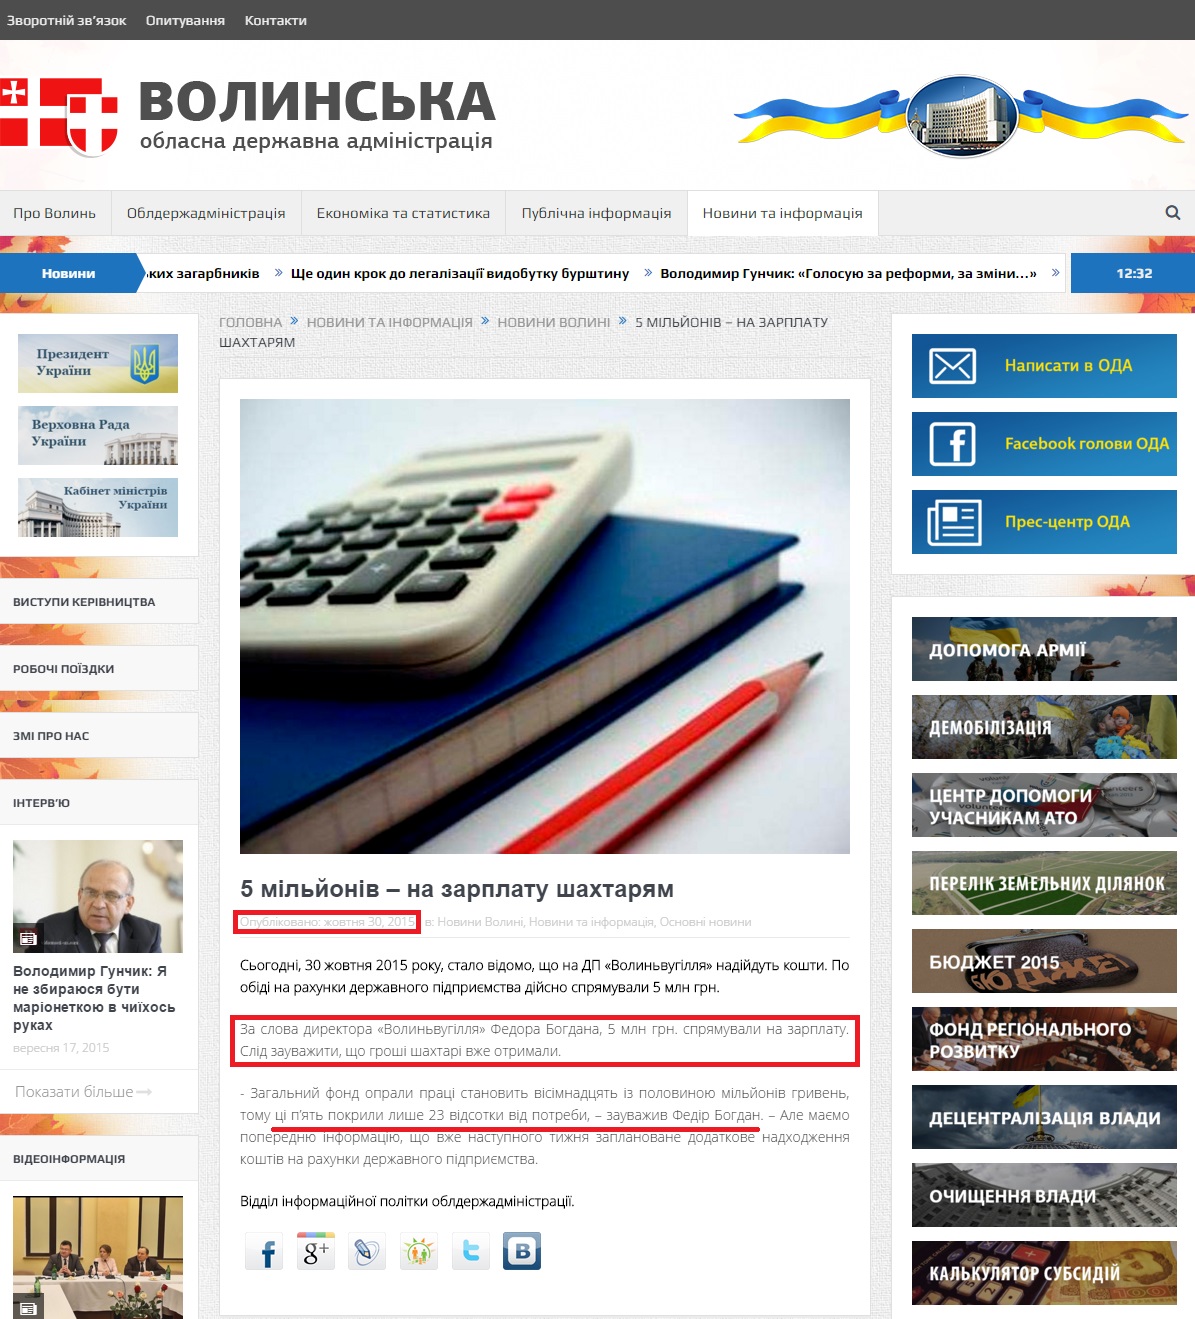 http://voladm.gov.ua/5-miljoniv-na-zarplatu-shaxtaryam/